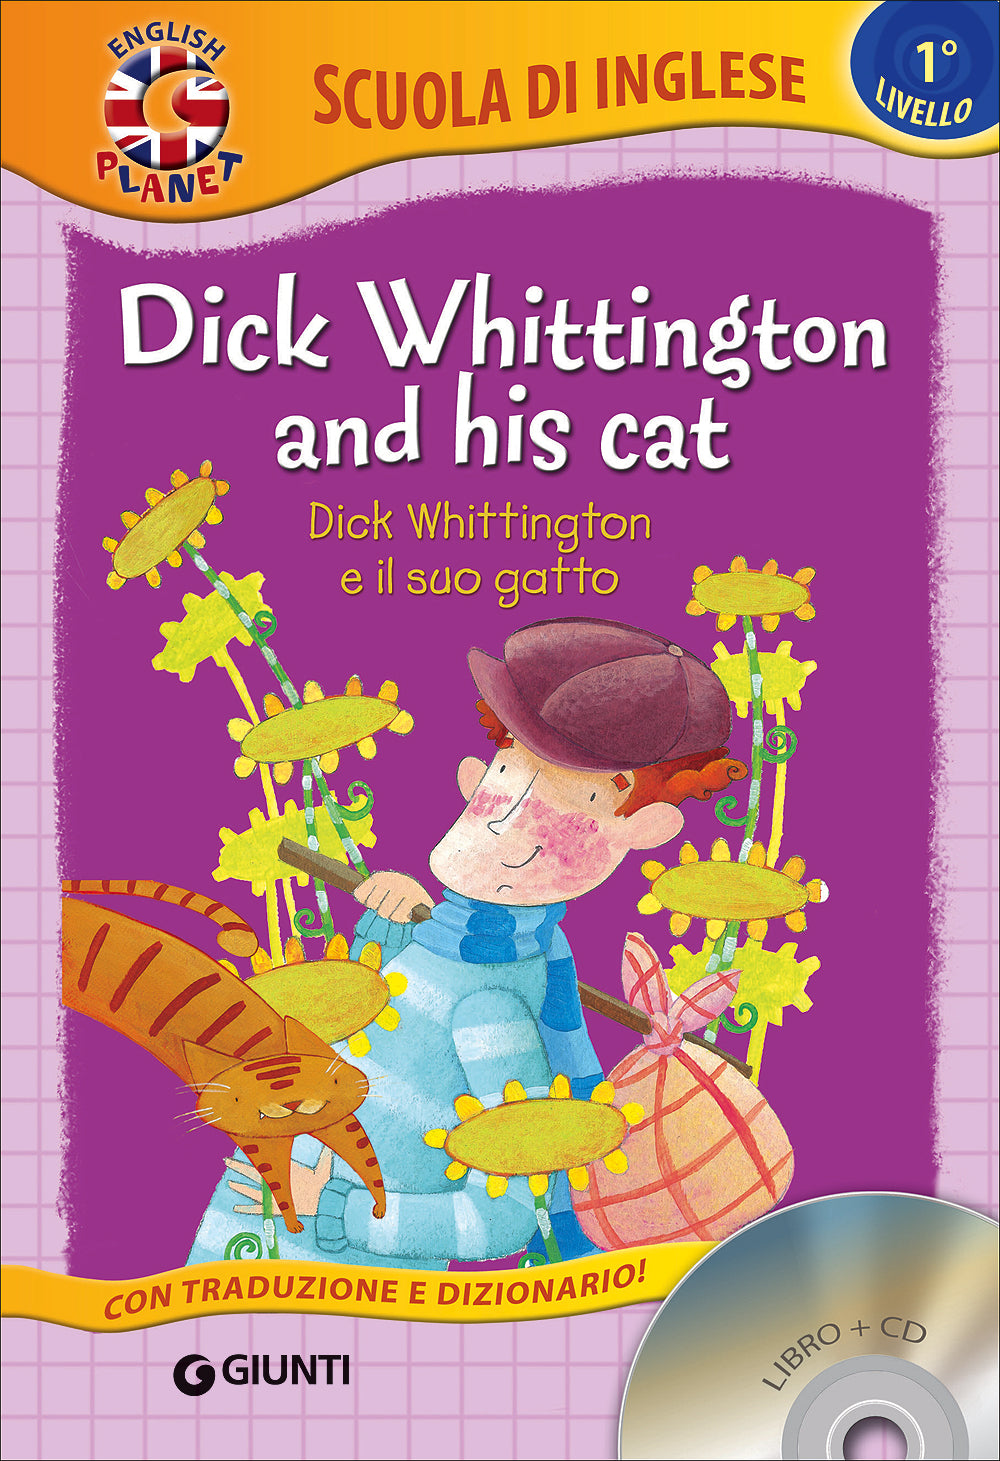 Dick Whittington and his cat + CD. Dick Whittington e il suo gatto - Con traduzione e dizionario!